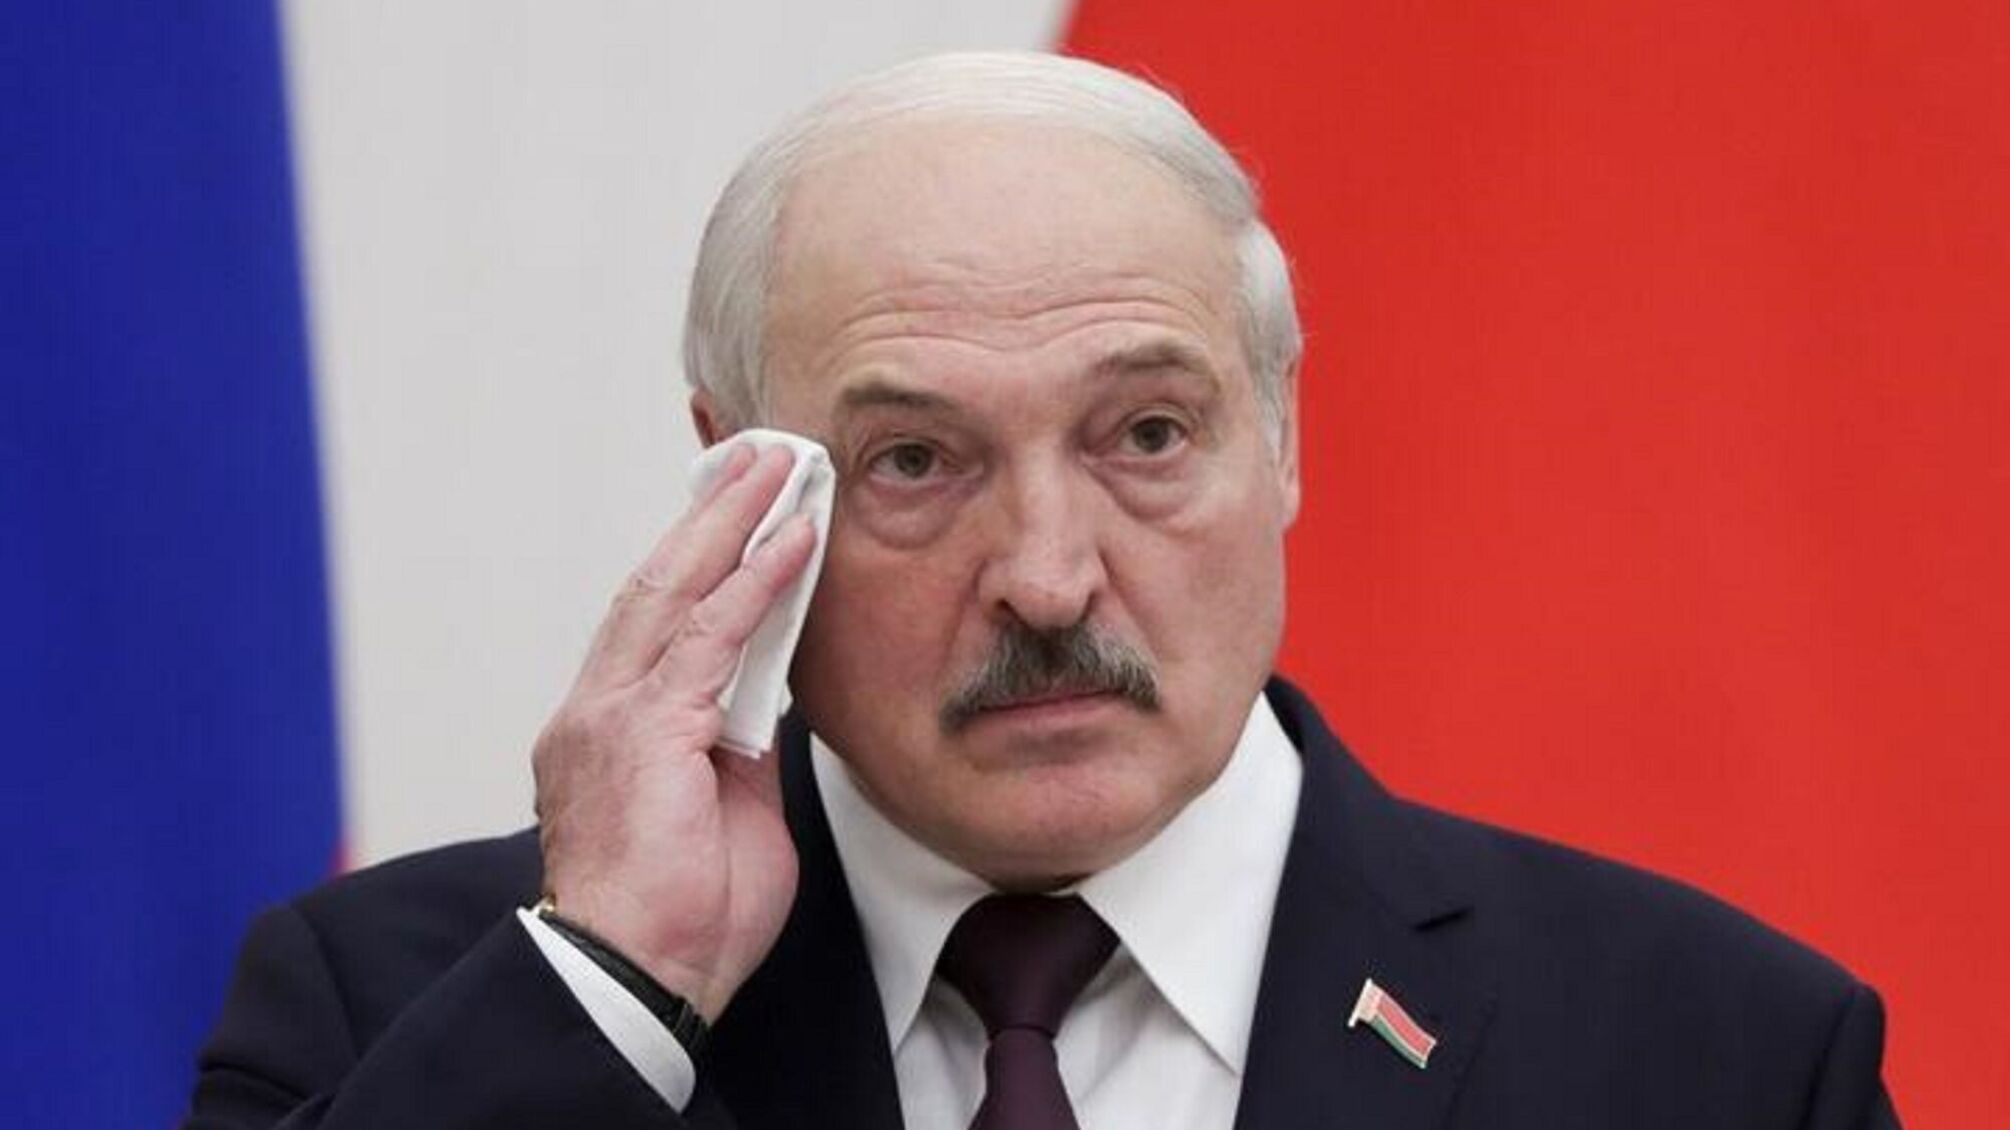 Лукашенко поздравил украинцев с Днем Независимости и пожелал 'мирного неба и толерантности'